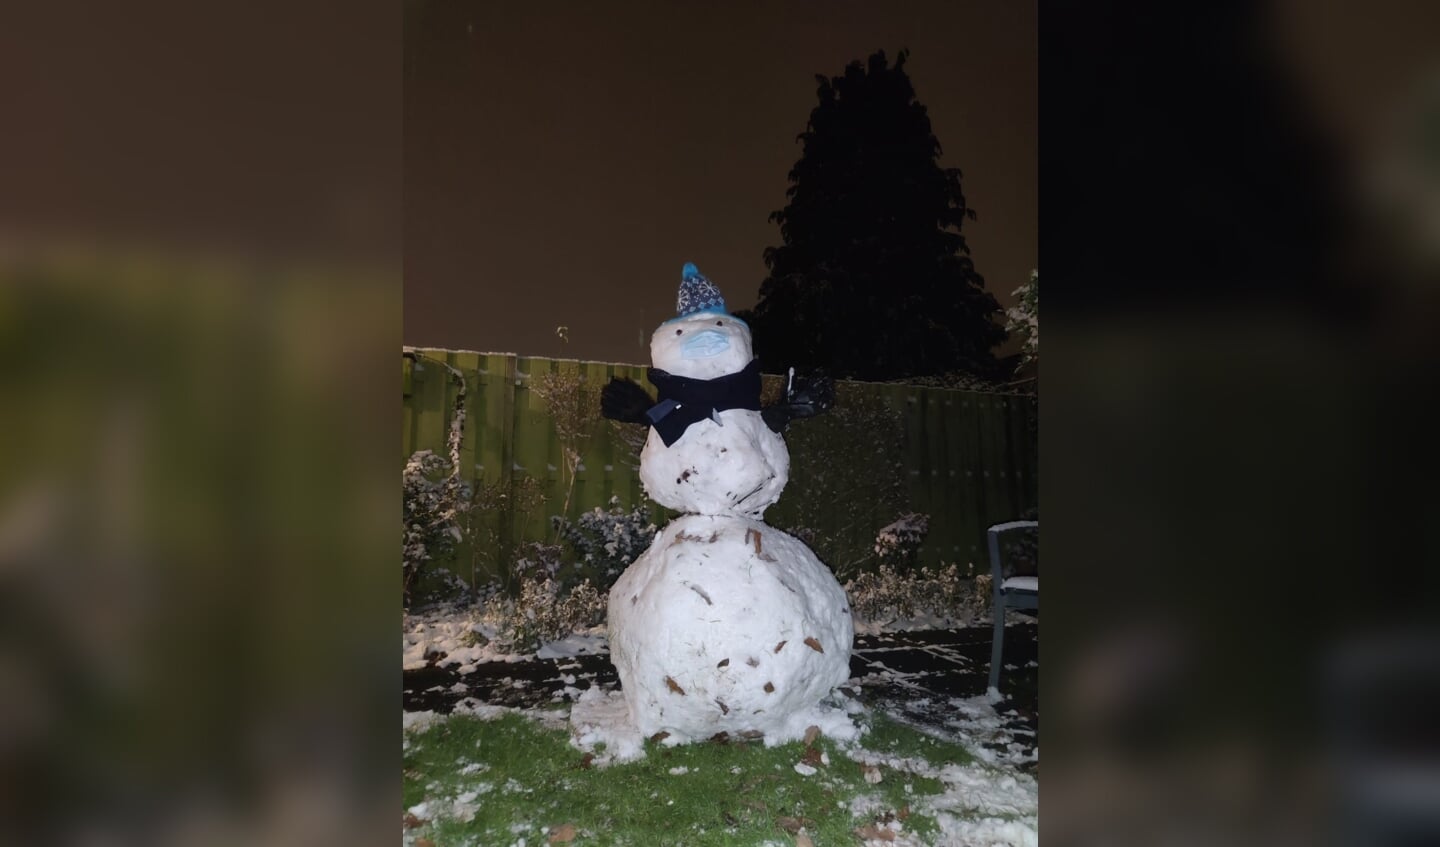 De eerste sneeuwpop sinds tijden in de achtertuin!